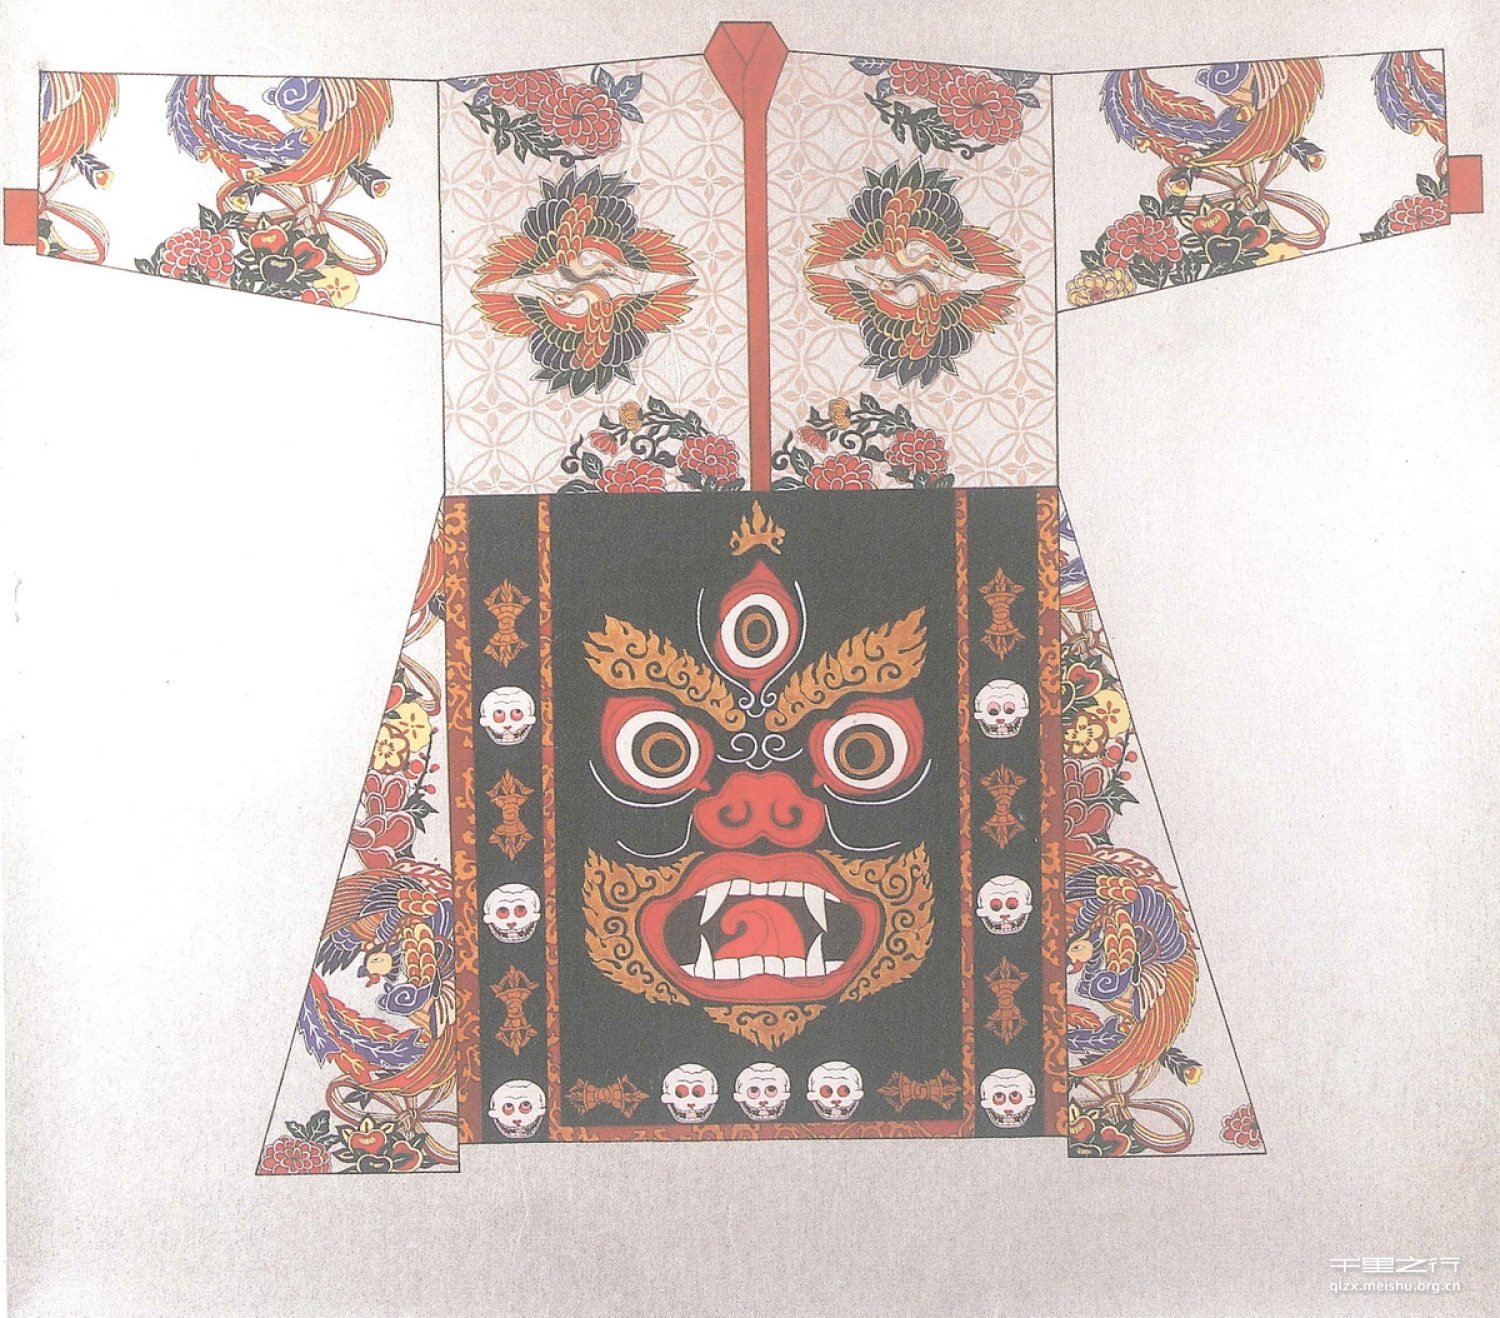 藏传佛教唐卡艺术研究与表现艺术鉴藏传统线性表现、重彩